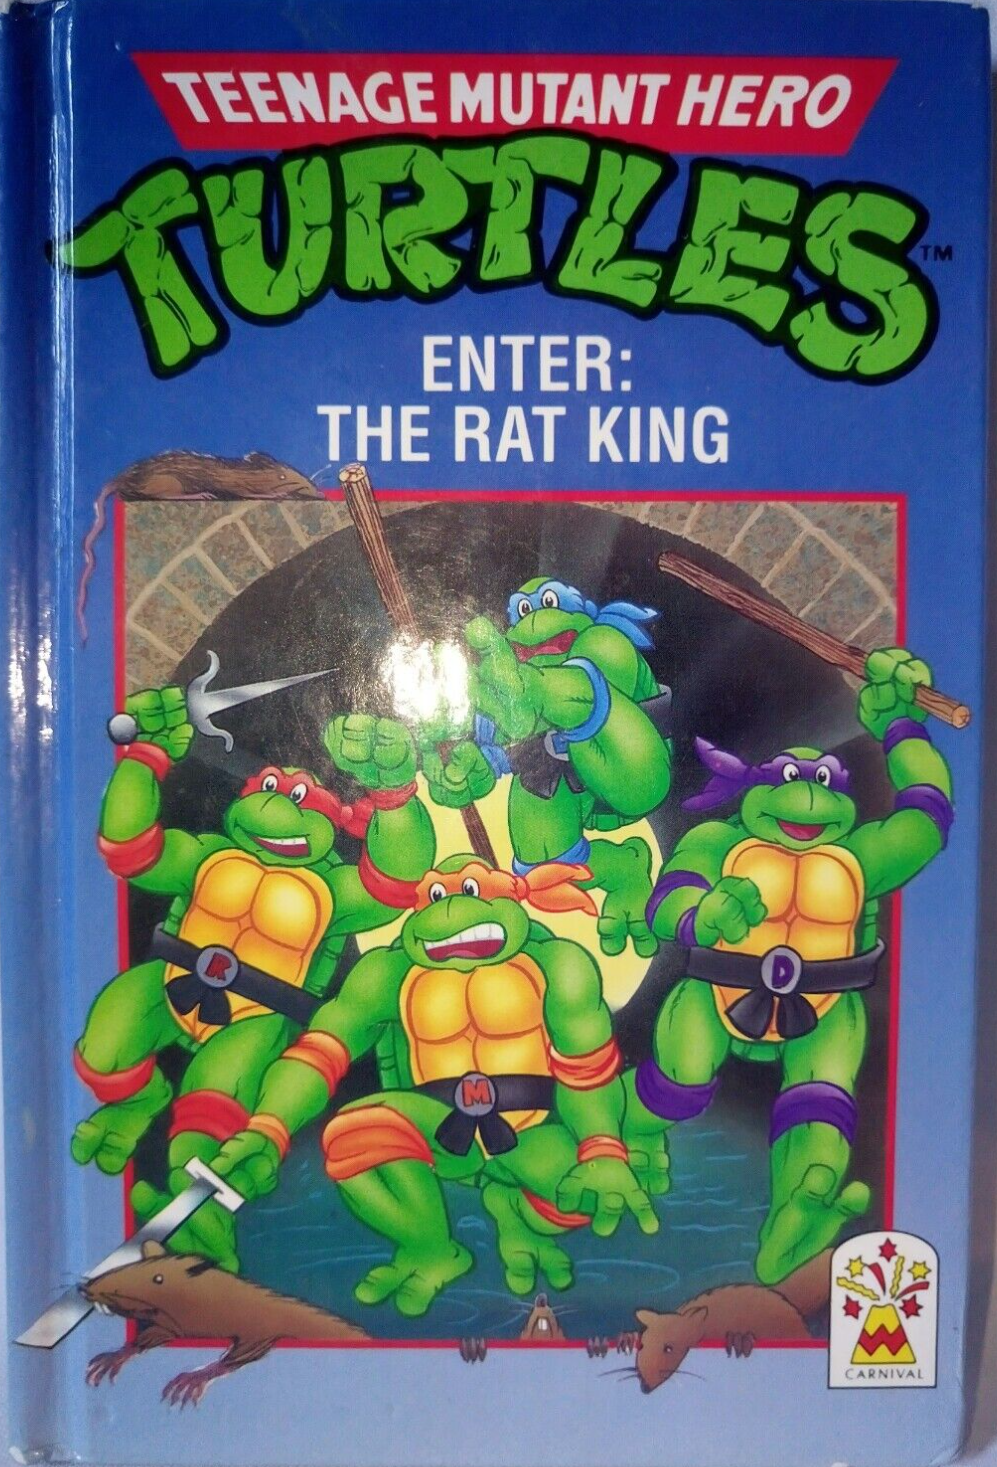 Teenage Mutant Ninja Turtles - Rat King and Vernon Fenwick 2-Pack